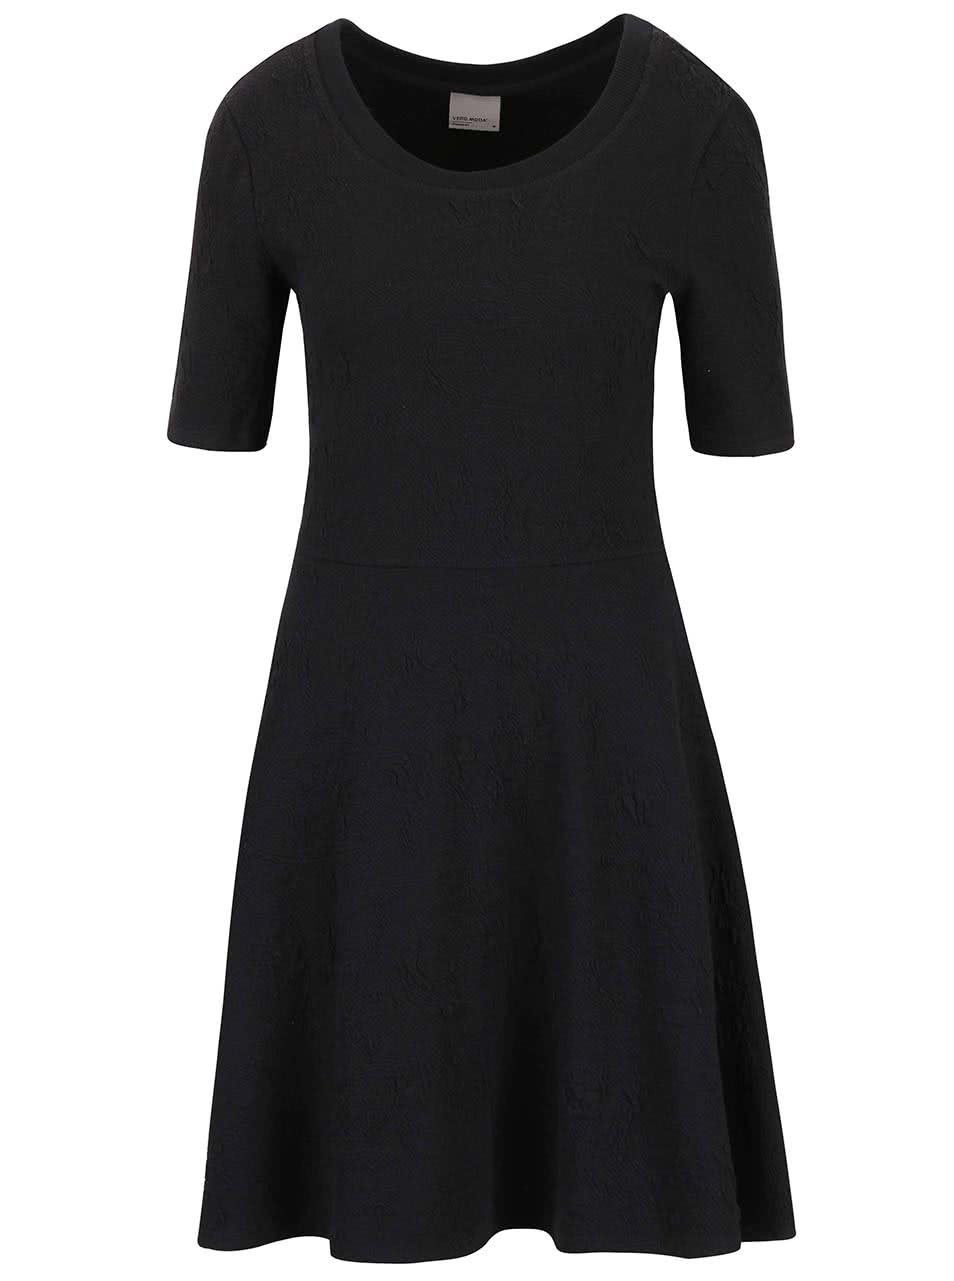 Černé šaty se vzorem Vero Moda Marianne